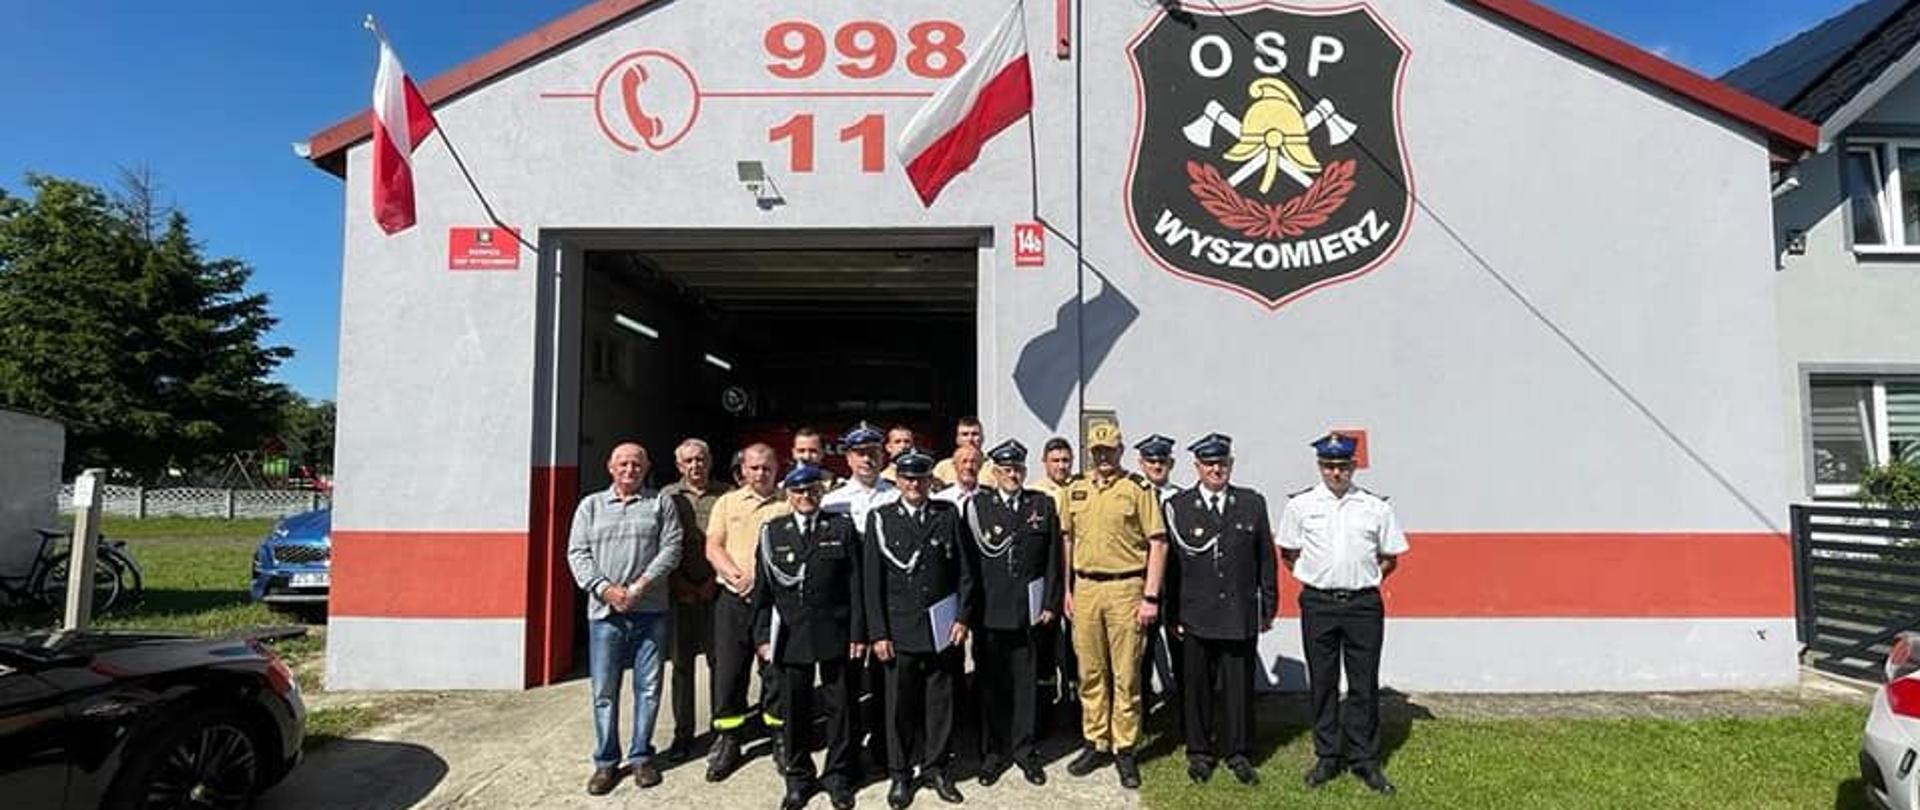 Komendant Wojewódzki Państwowej Straży Pożarnej z wizytą w Wyszomierzu